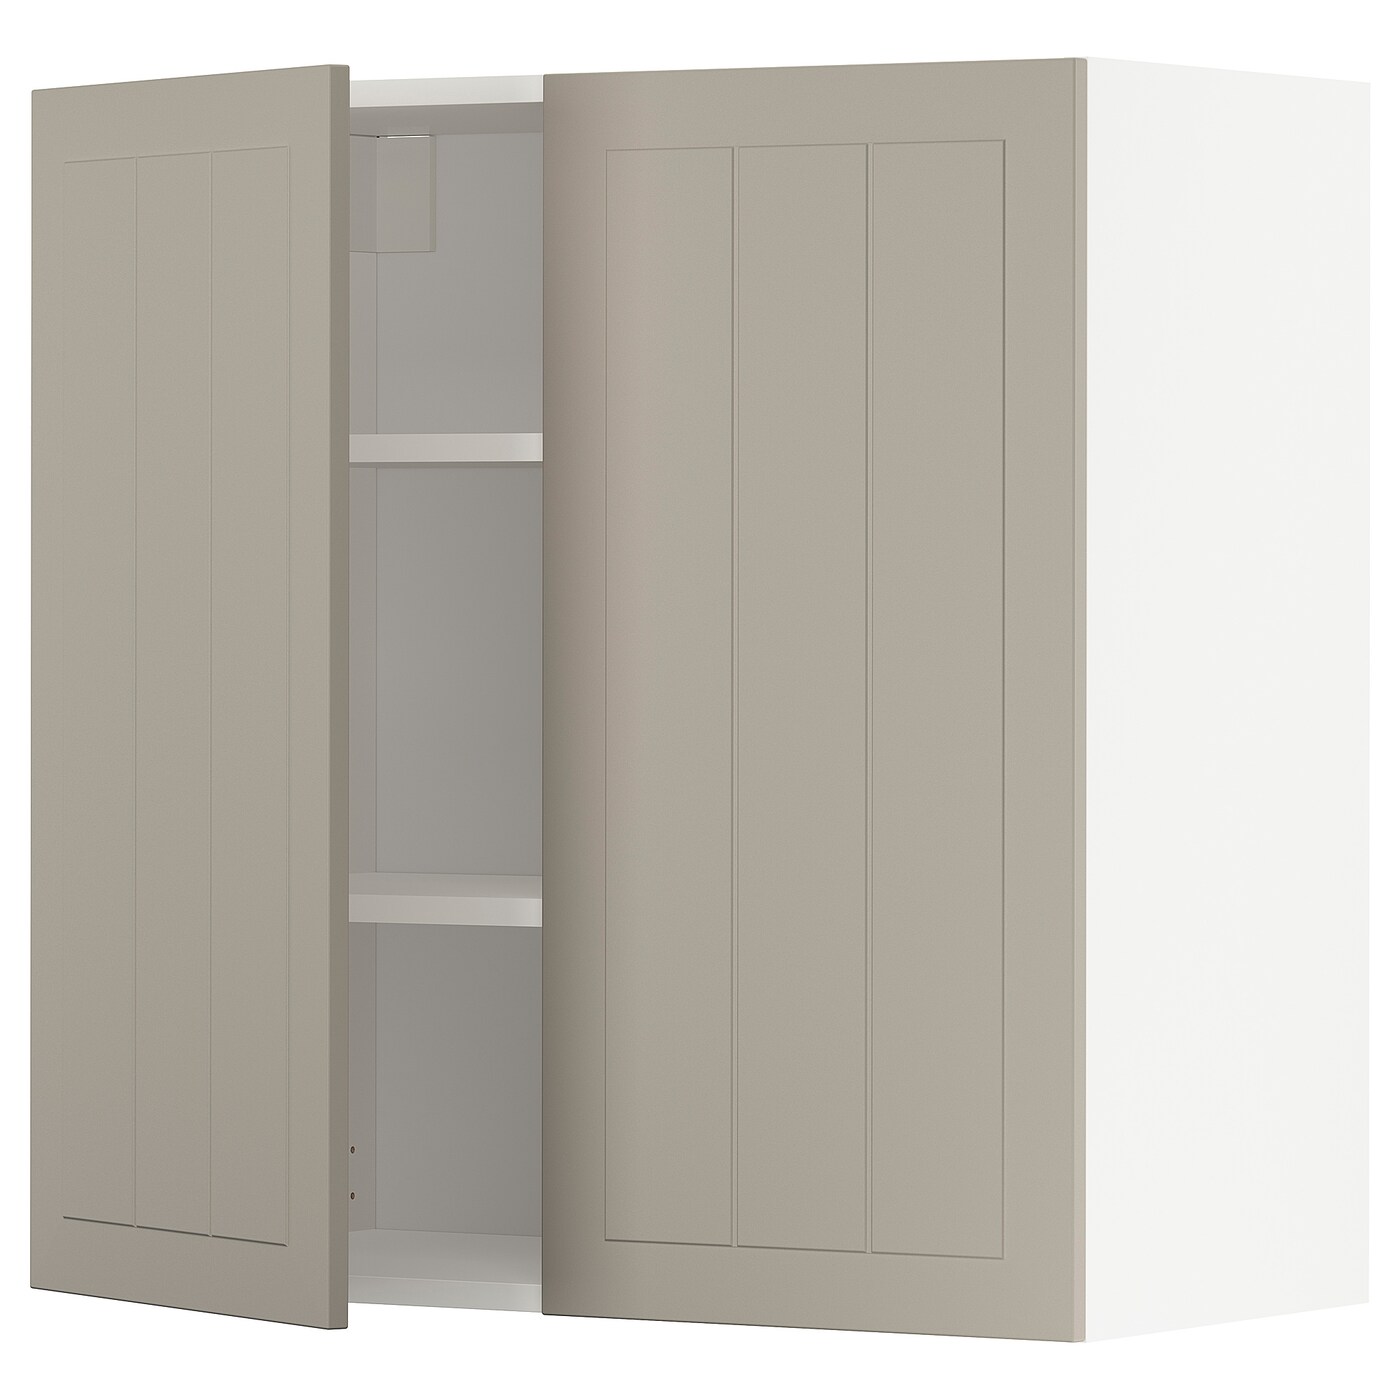 Навесной шкаф с полкой - METOD IKEA/ МЕТОД ИКЕА, 80х80 см, белый/светло-коричневый